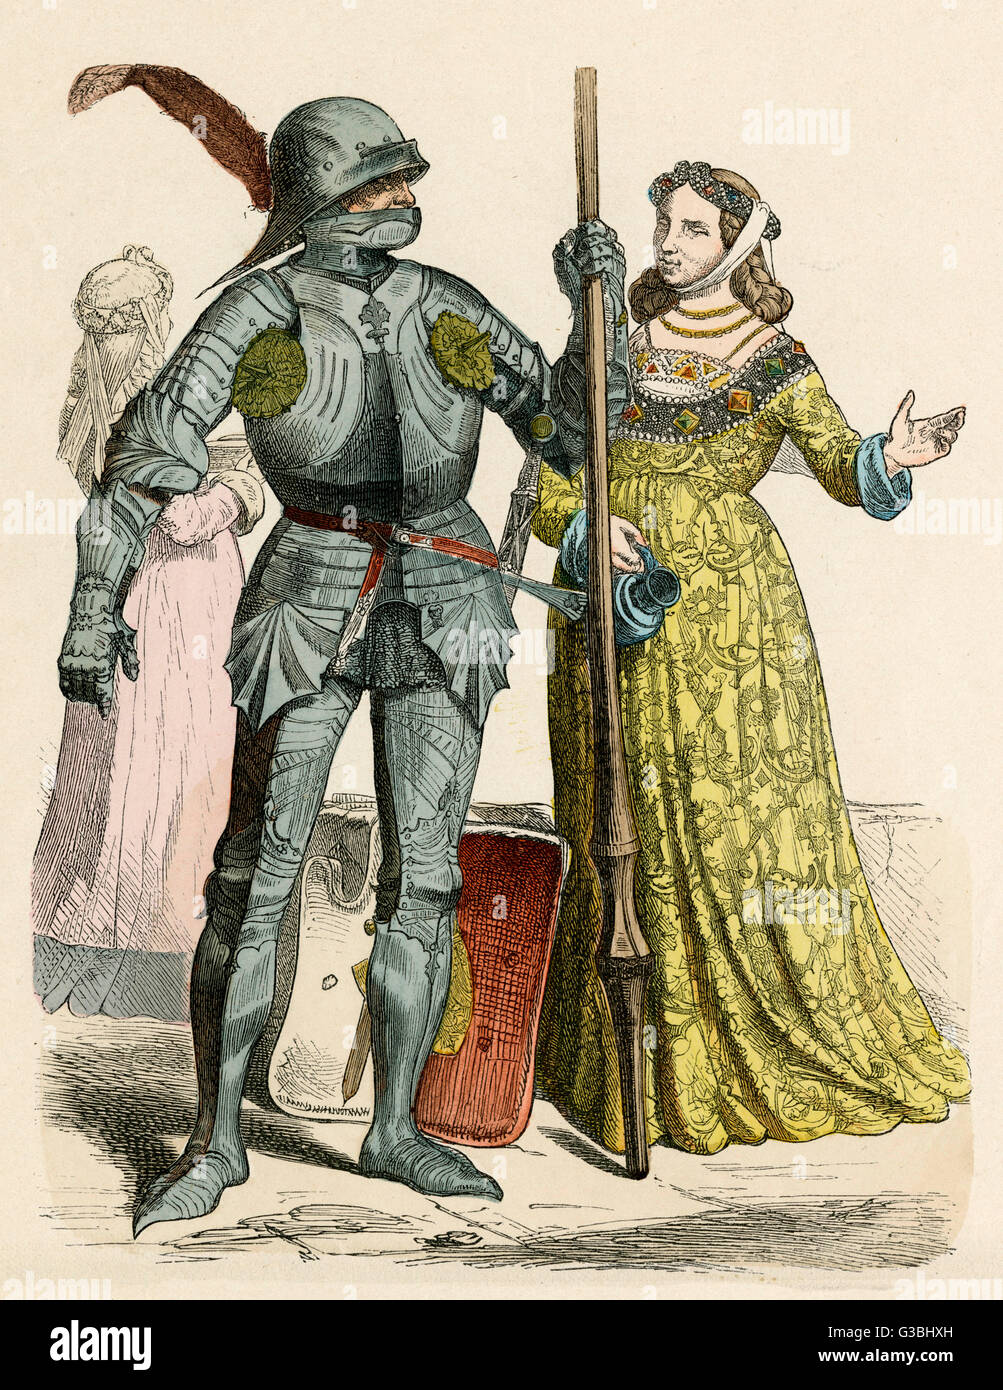 Deutsche Ritter und seine Dame. Er trägt einen vollständigen Anzug Rüstung, trägt sie eine kunstvoll gemusterten Kleid und einem Burlet und Barbette auf geflochtenem Haar.     Datum: 15. Jahrhundert Stockfoto